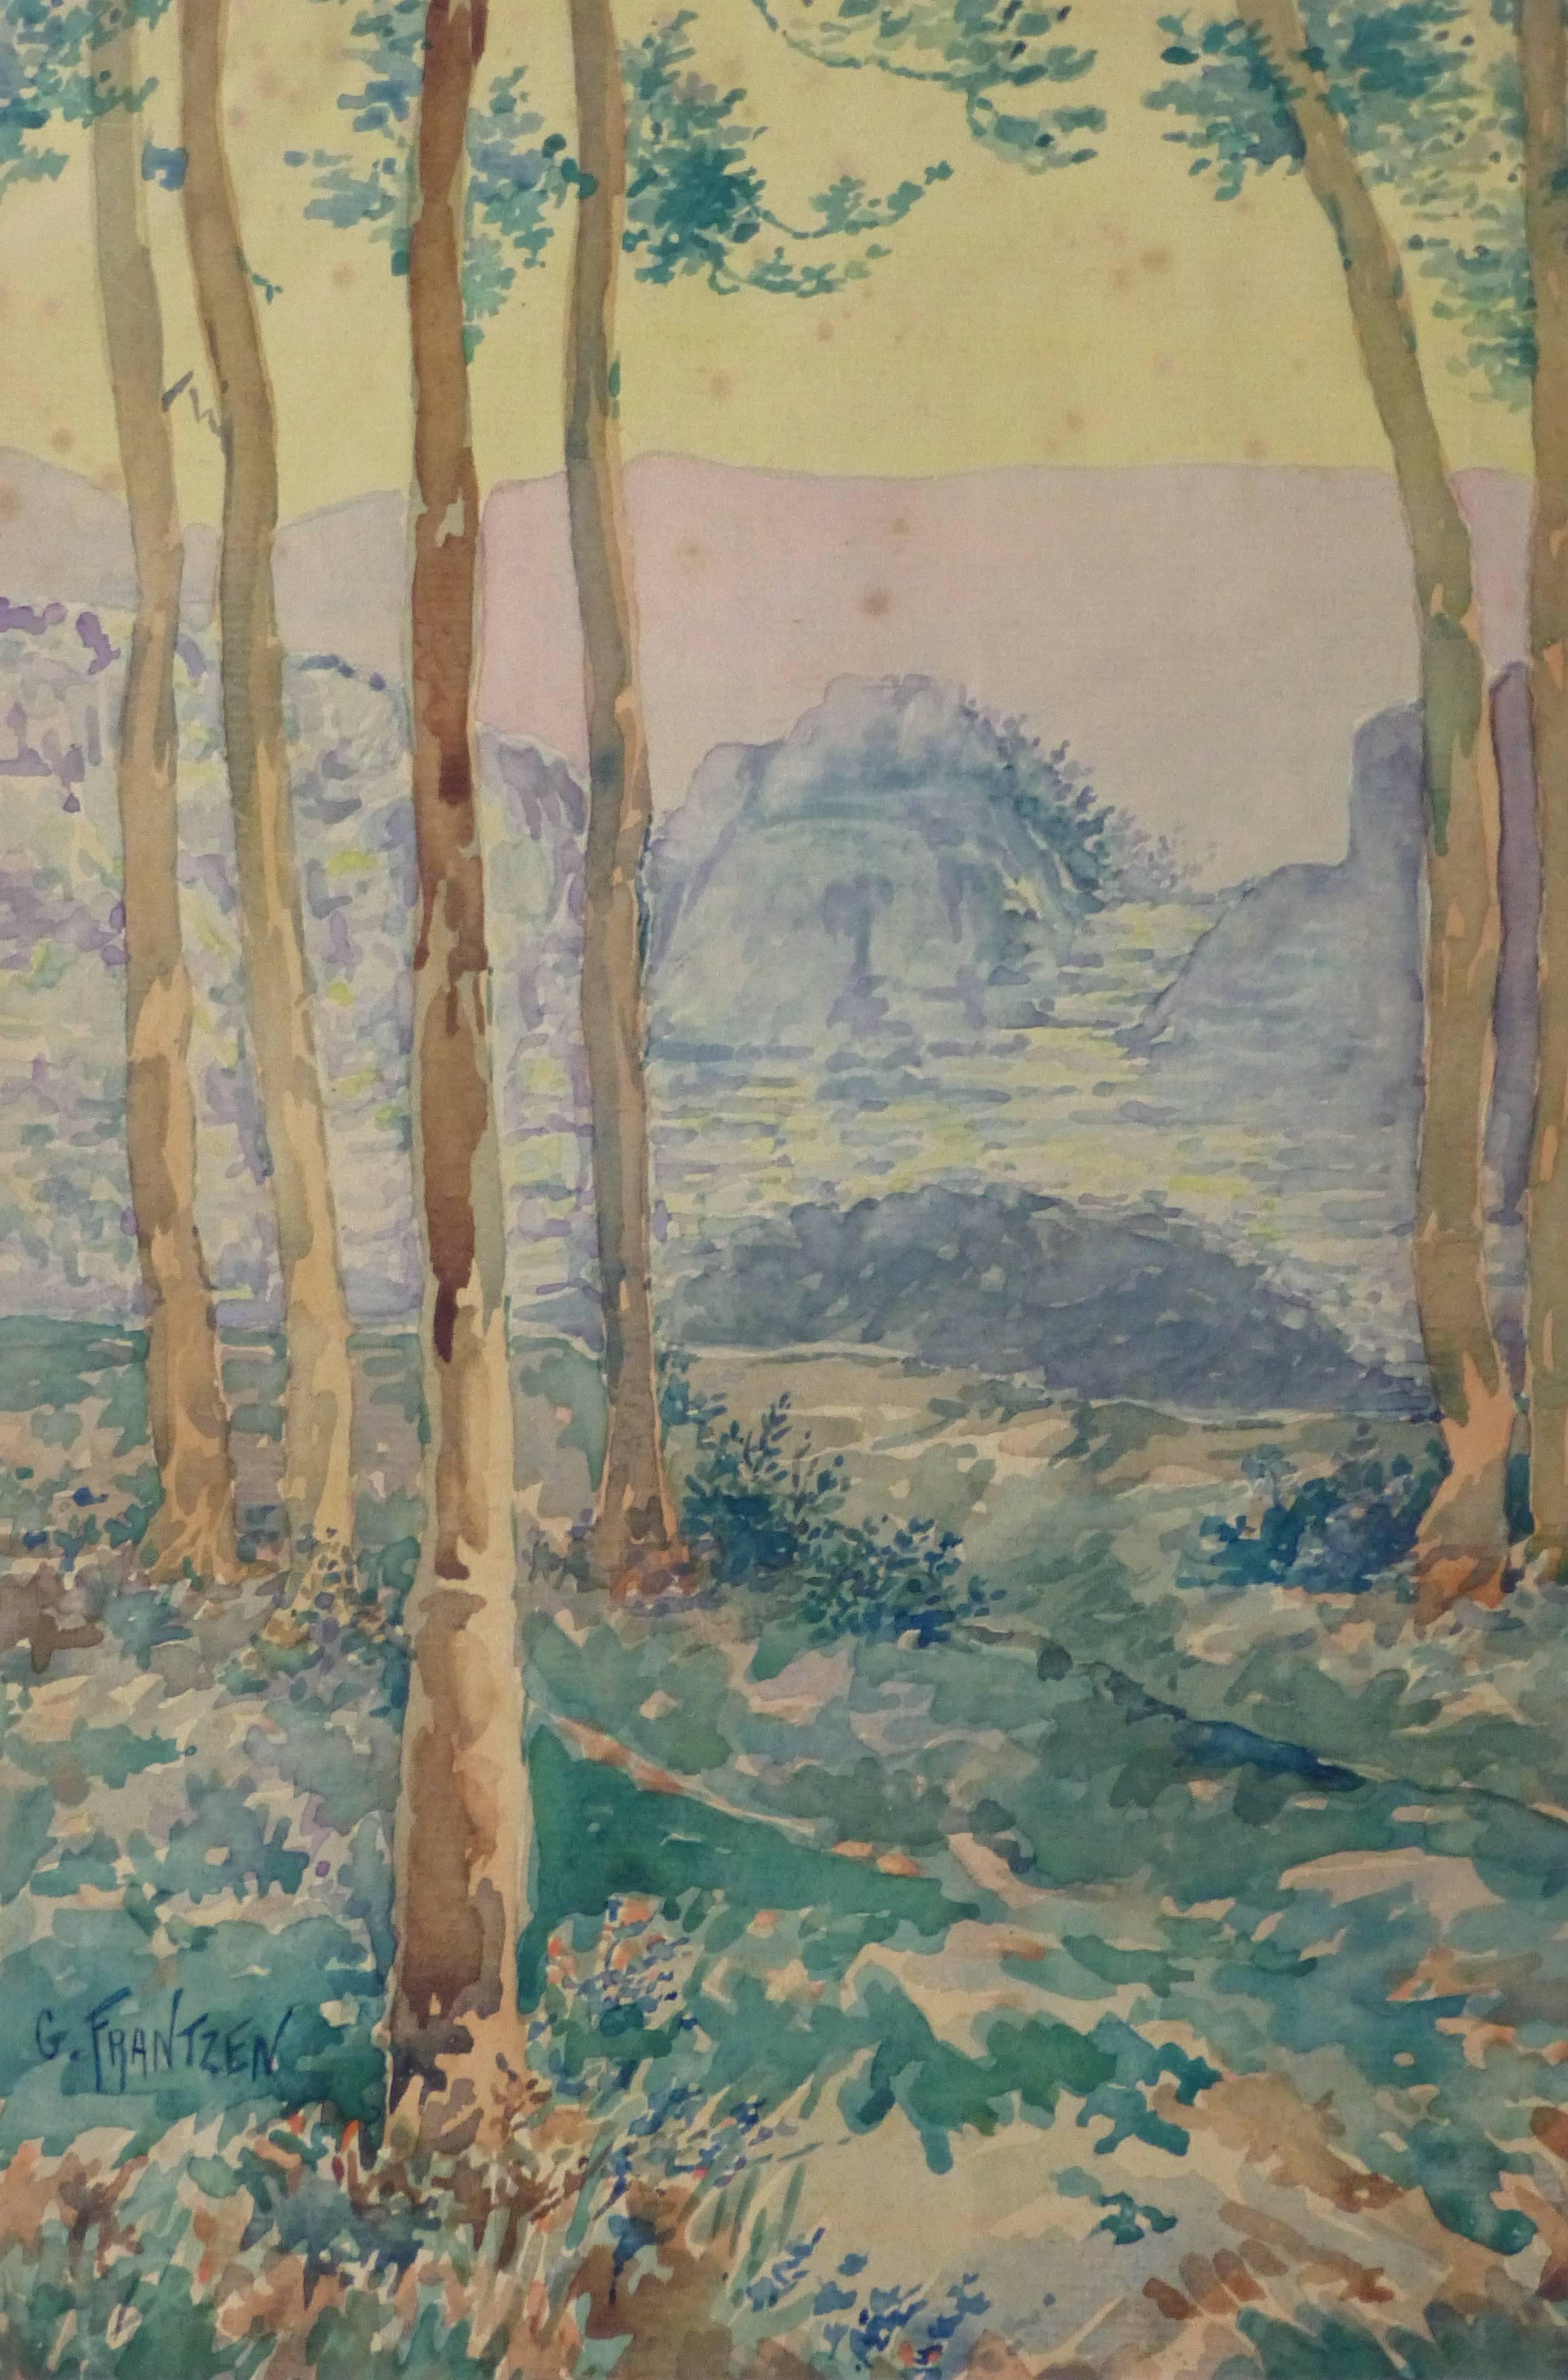 Gustave Frantzen Landscape Art - Antique Watercolor Landscape - Through the Tall Tress Mountains Appear